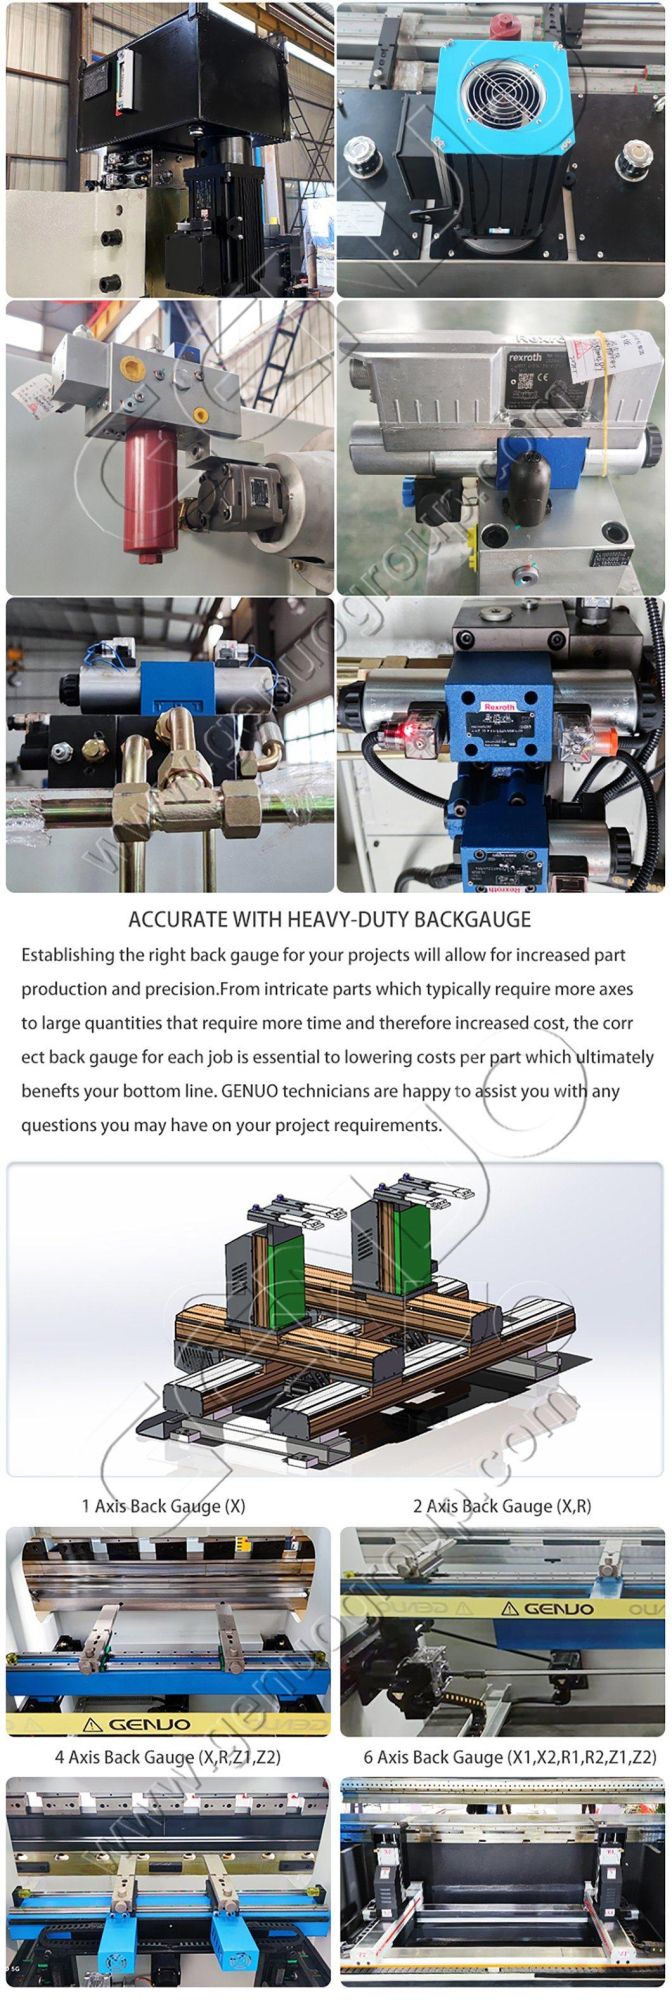 Automatic CNC Hydraulic Bending Machine Professional Mechanical